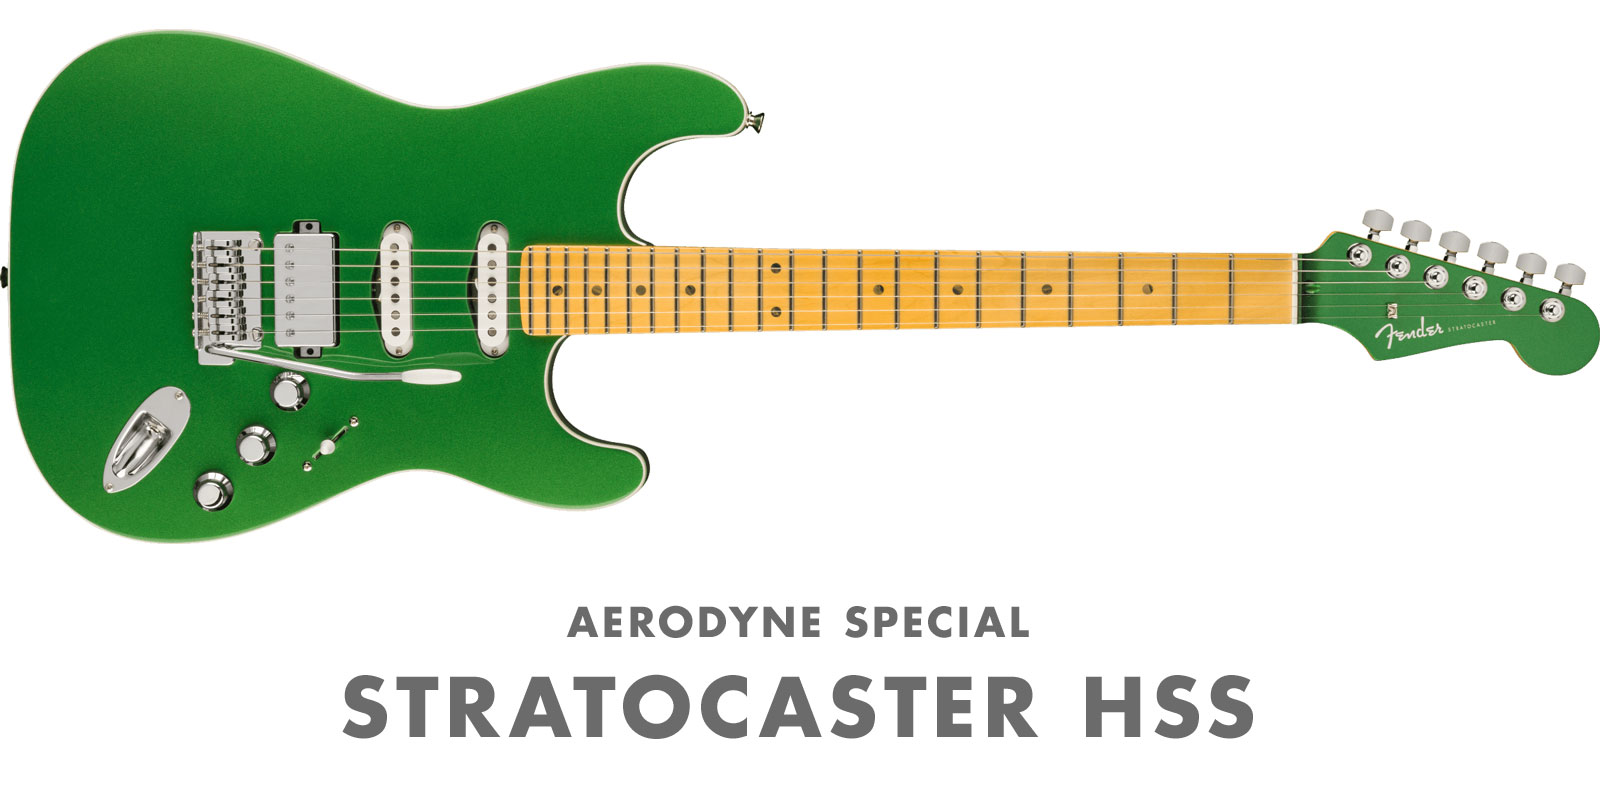 Fender Made in Japan Aerodyne Special | イシバシ楽器